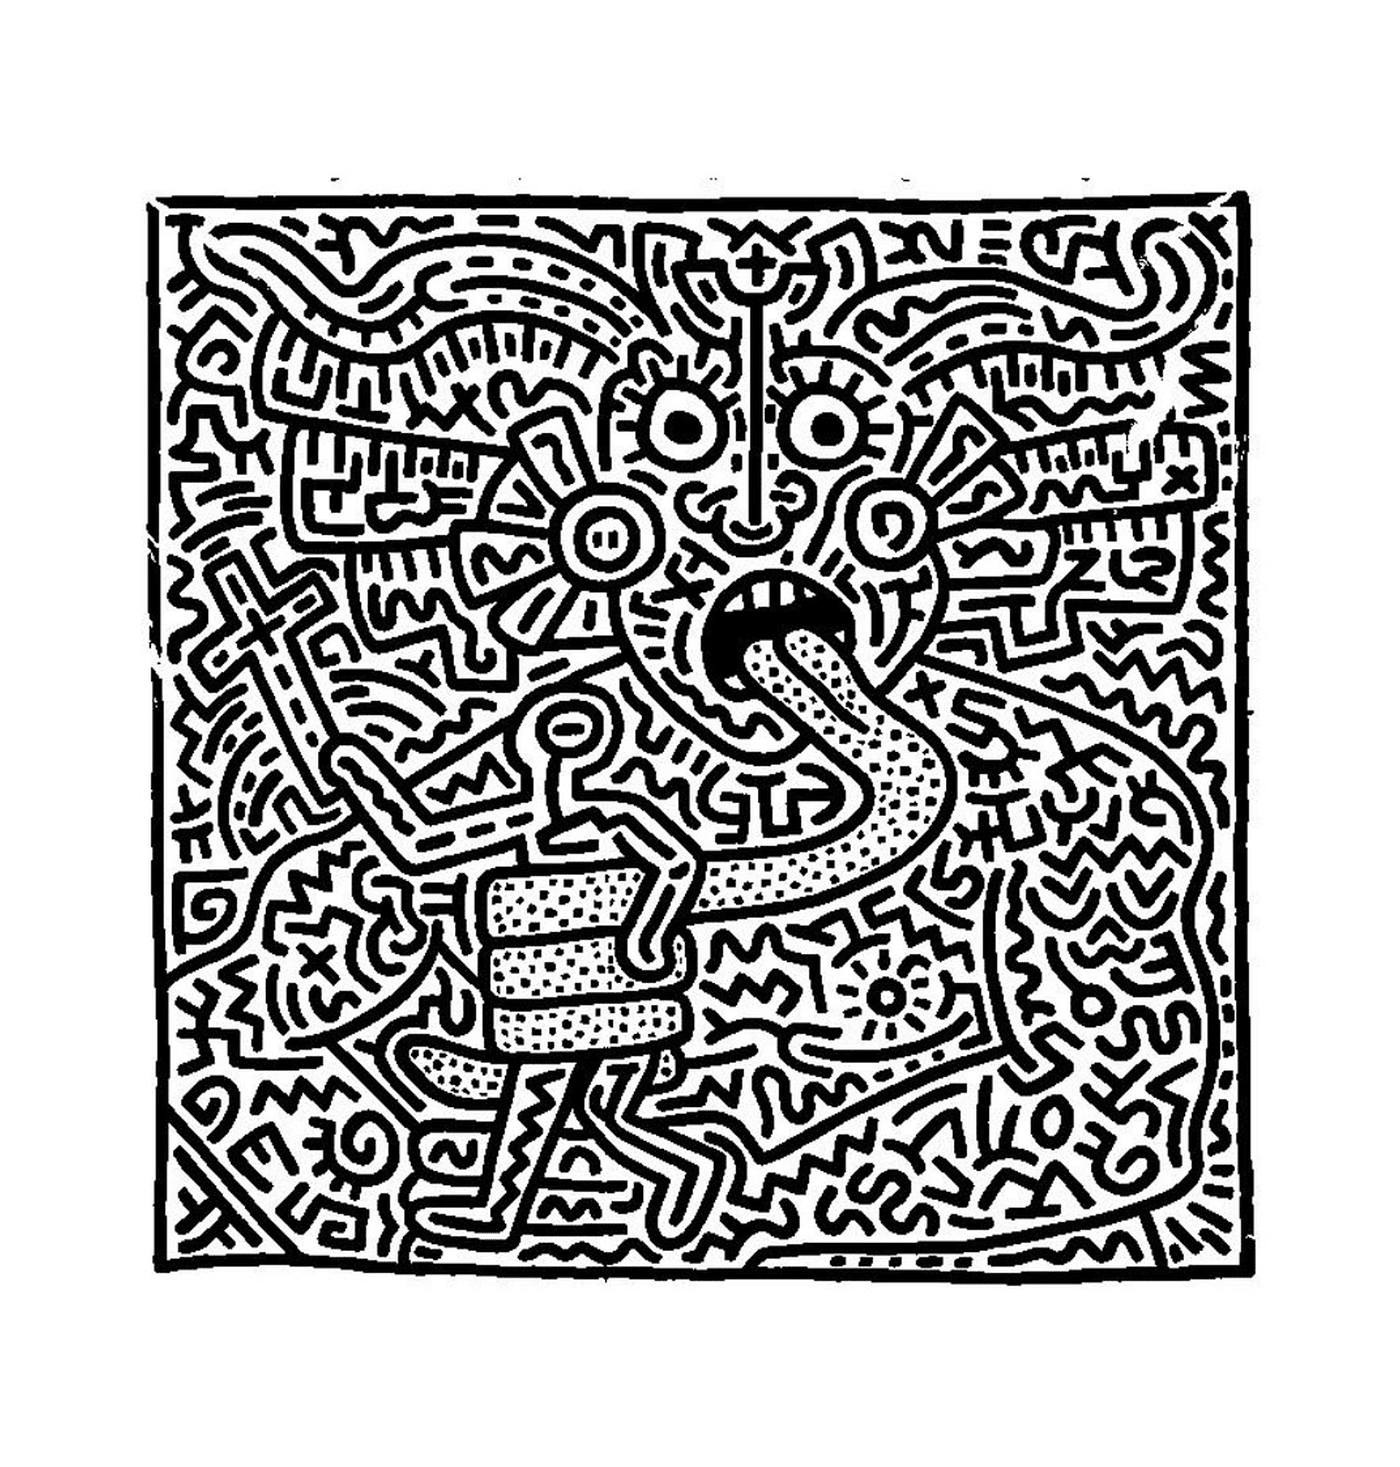  O rosto de um homem de acordo com Keith Haring 